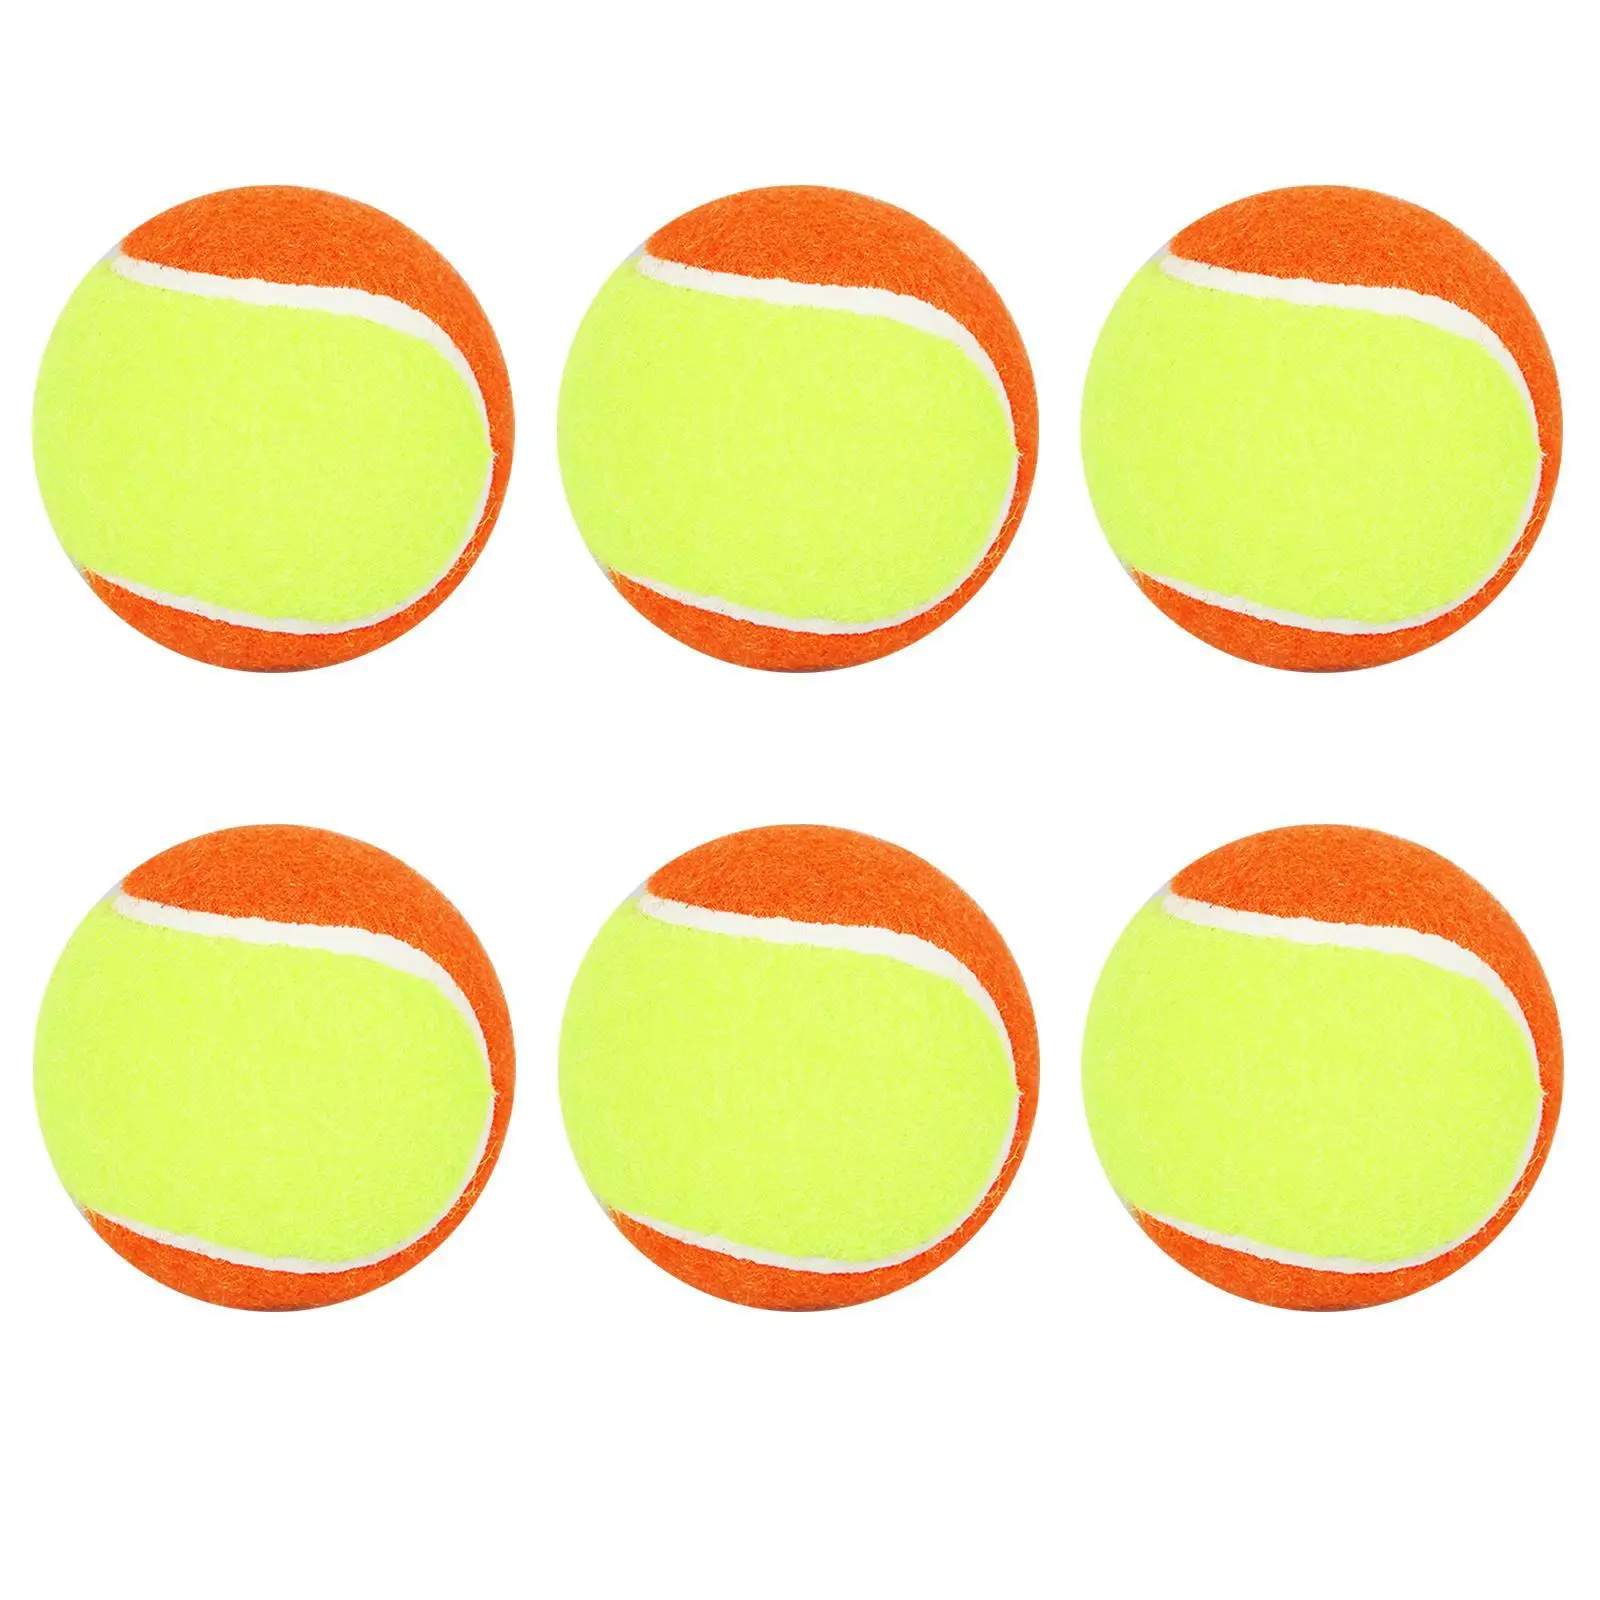 

Мяч для Тенниса Детский мягкий, тренировочный мяч для пляжа, тенниса, спорта на открытом воздухе, профессиональные резиновые мячи для тенни...